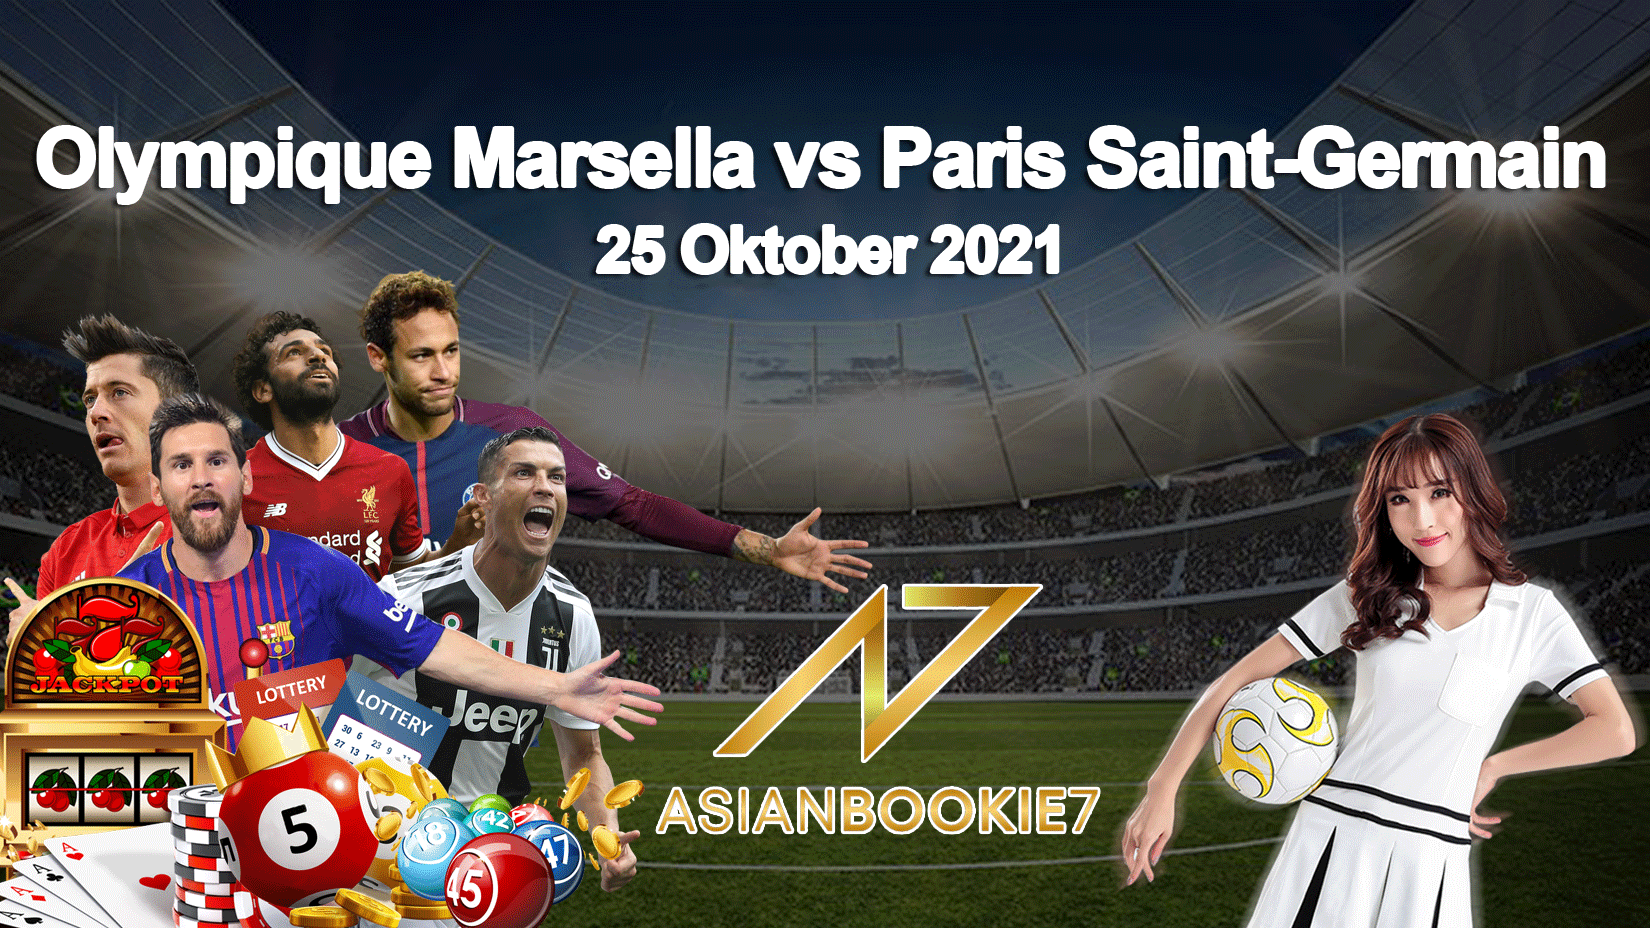 Prediksi Olympique Marsella vs Paris Saint-Germain 25 Oktober 2021